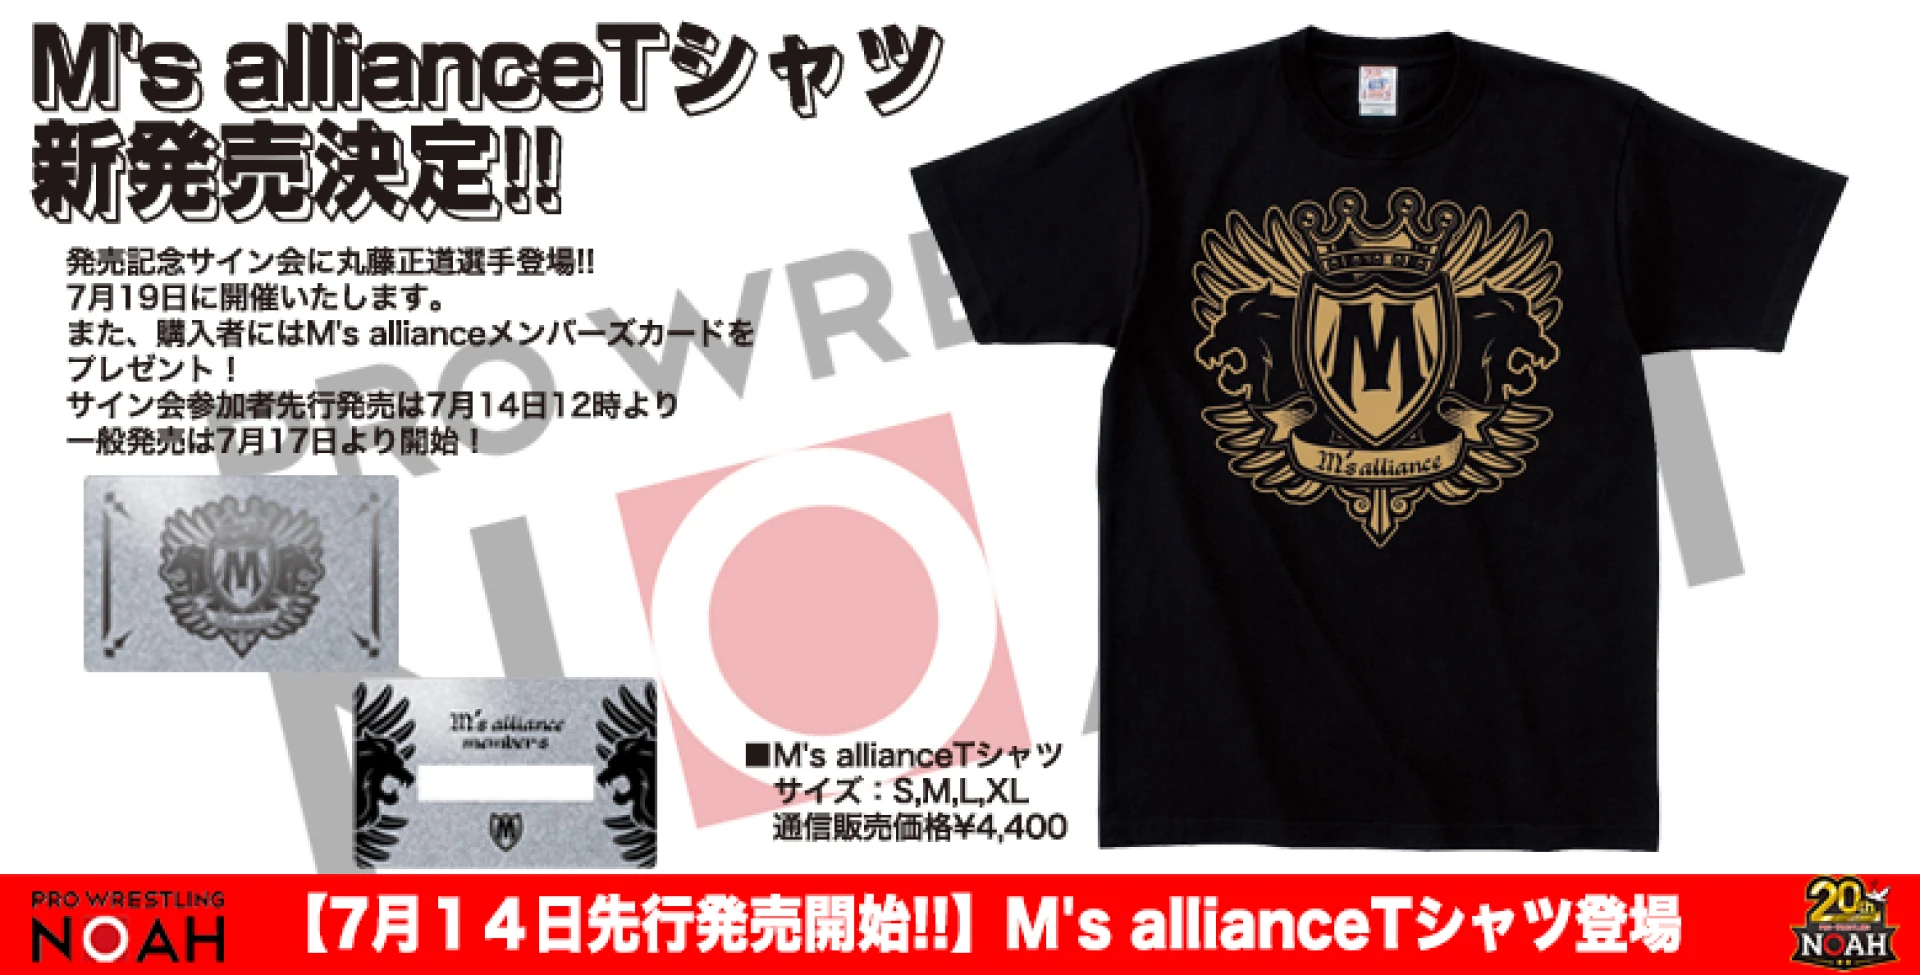 【7月14日先行発売開始】M's allianceTシャツ登場!!